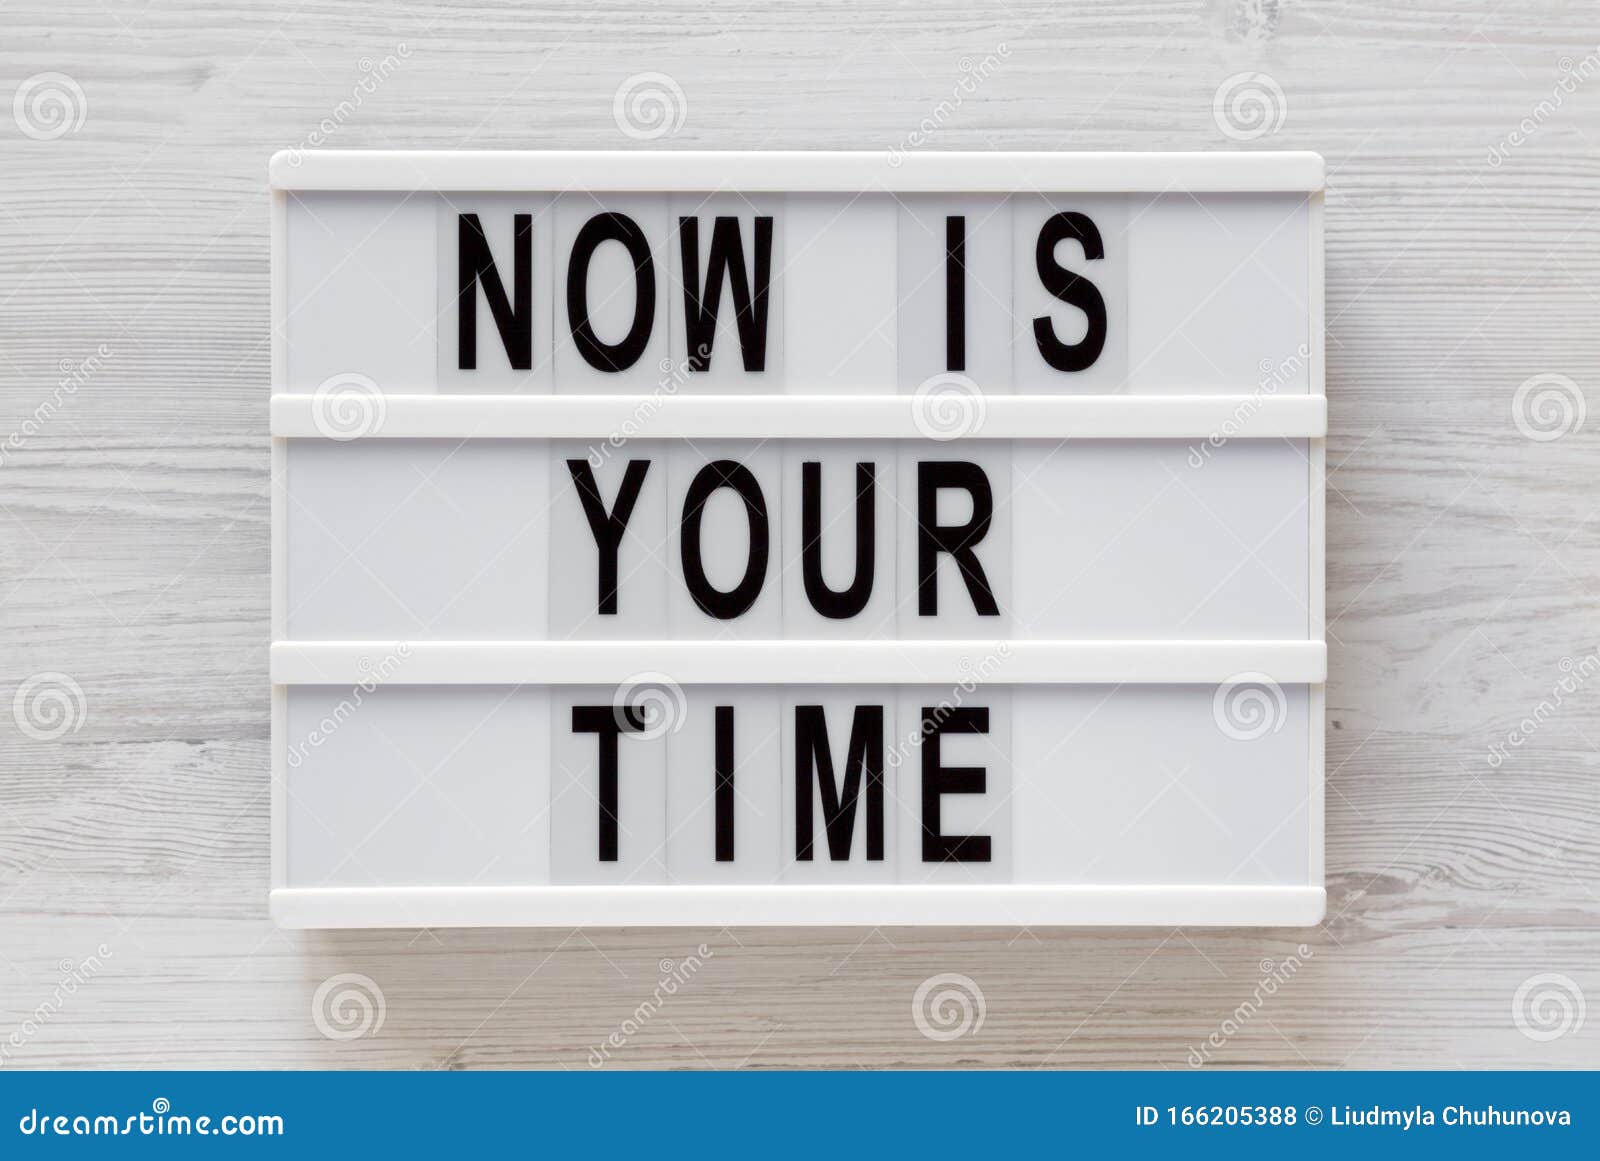 "Ahora es tu tiempo" palabras en una tabla moderna sobre una superficie de madera blanca, vista superior Cojinete, desde arriba, estrado plano Cierre